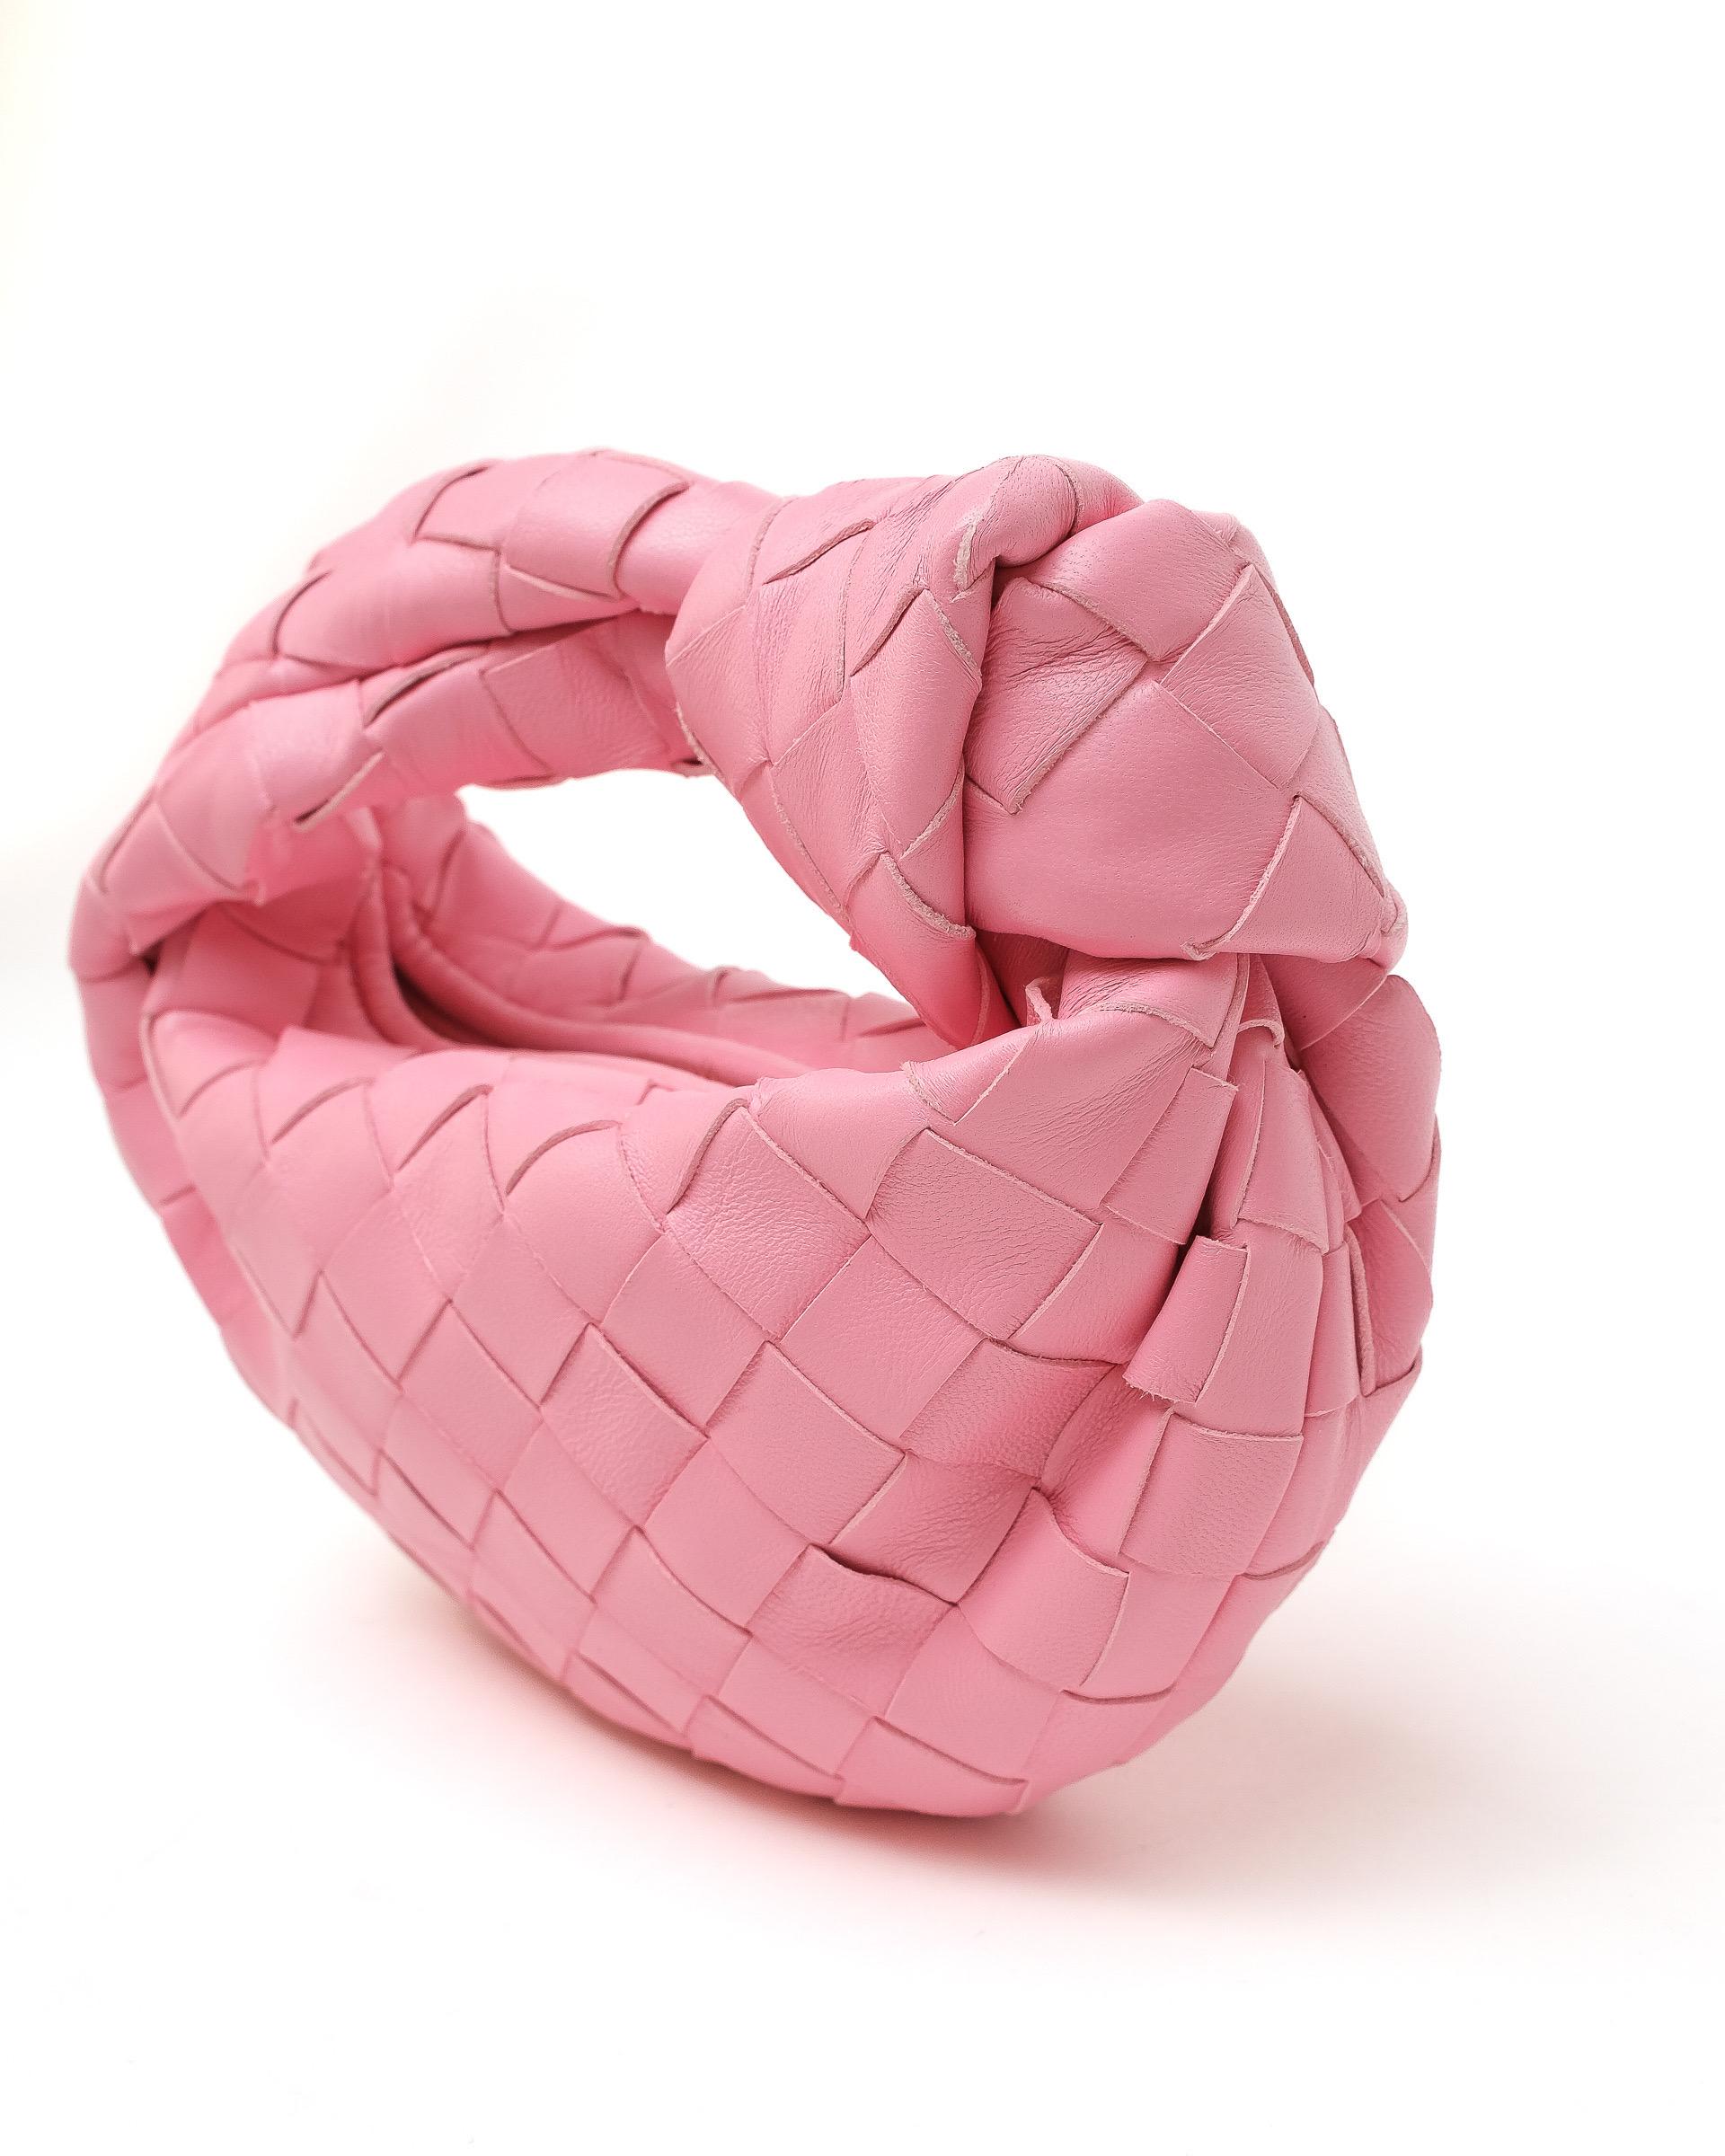 Borsa firmata Bottega Veneta, modello Candy Jodie, misura Mini, realizzata in pelle di agnello intrecciata color rosa con hardware dorati. Dotata di una chiusura superiore a zip, internamente rivestita in pelle tono su tono, capiente per